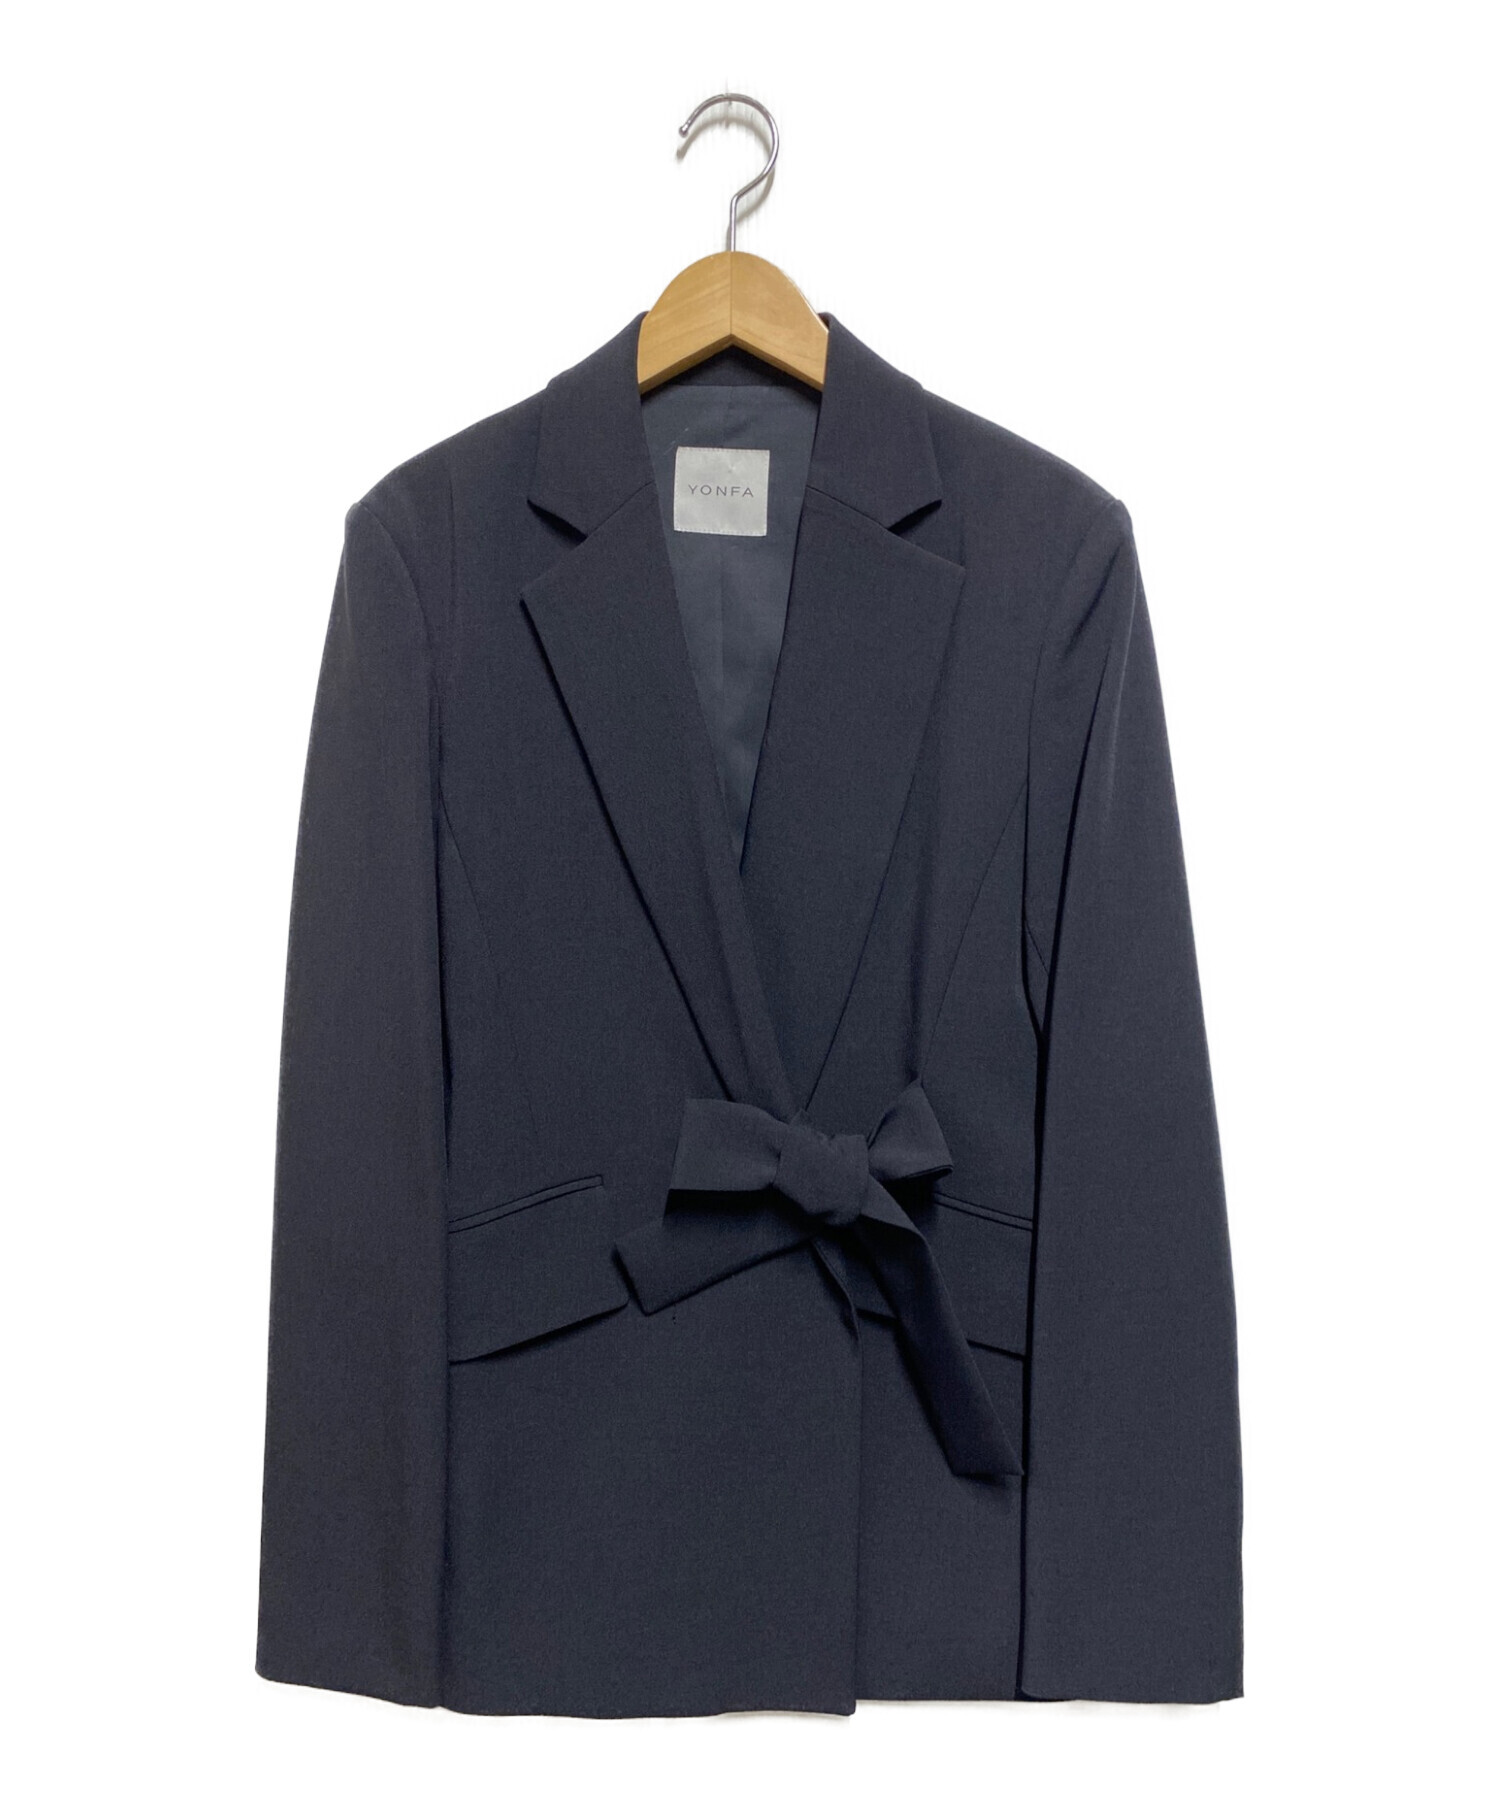 YONFA (ヨンファ) tie suits jacket ネイビー サイズ:М